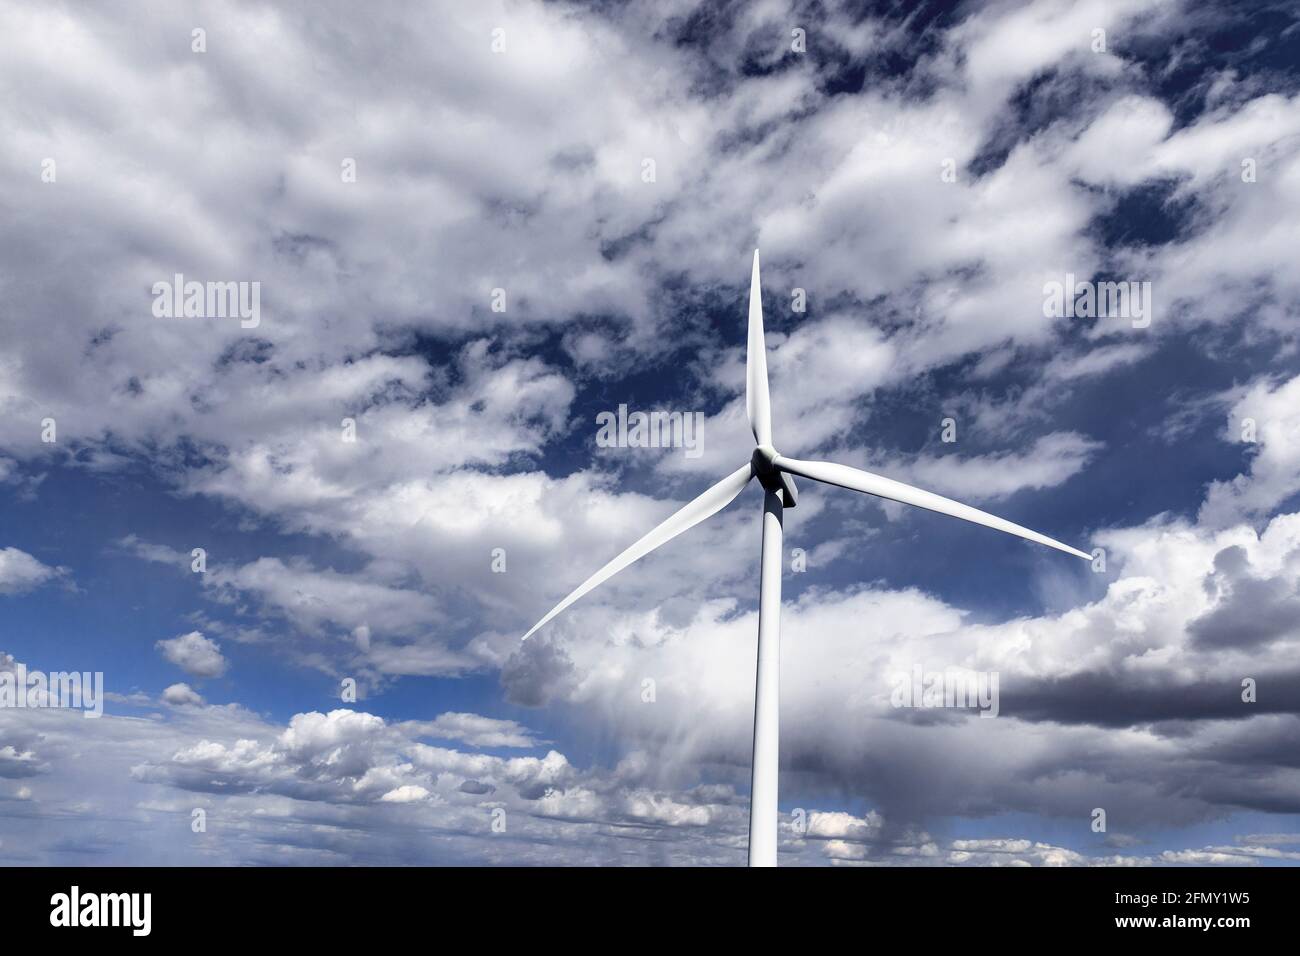 WA20214-00....WASHINGTON - Wild Horse parc éolien à énergie renouvelable opperé par Puget Sound Energy près d'Ellensburg. Banque D'Images